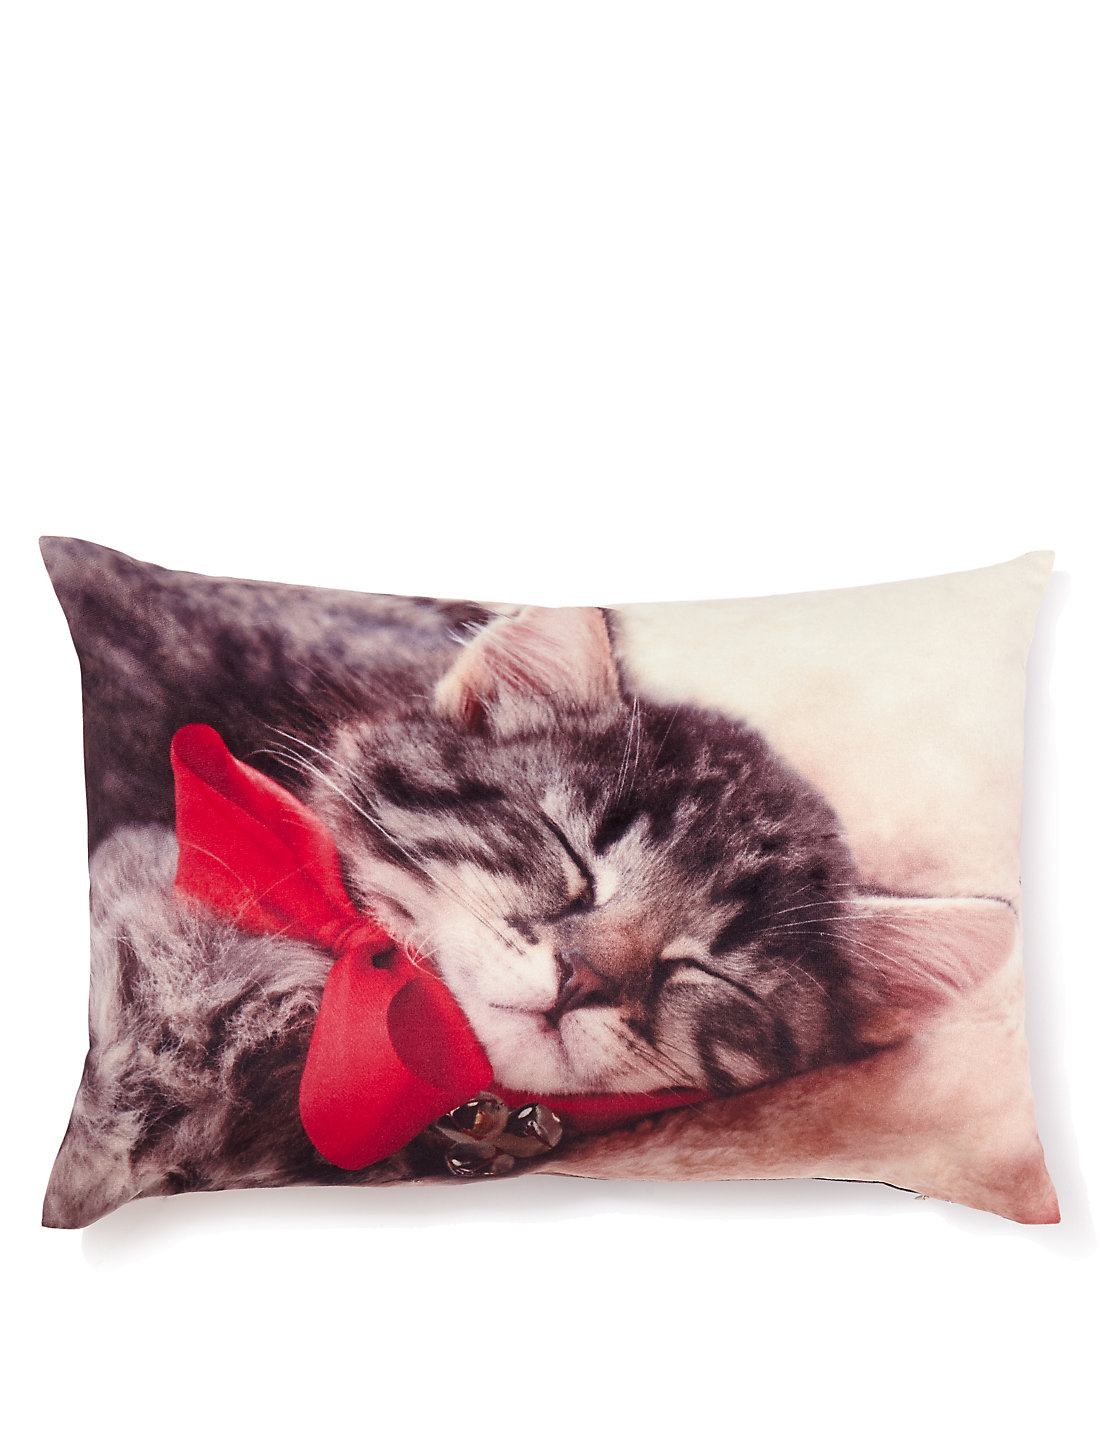 Kitten pillow